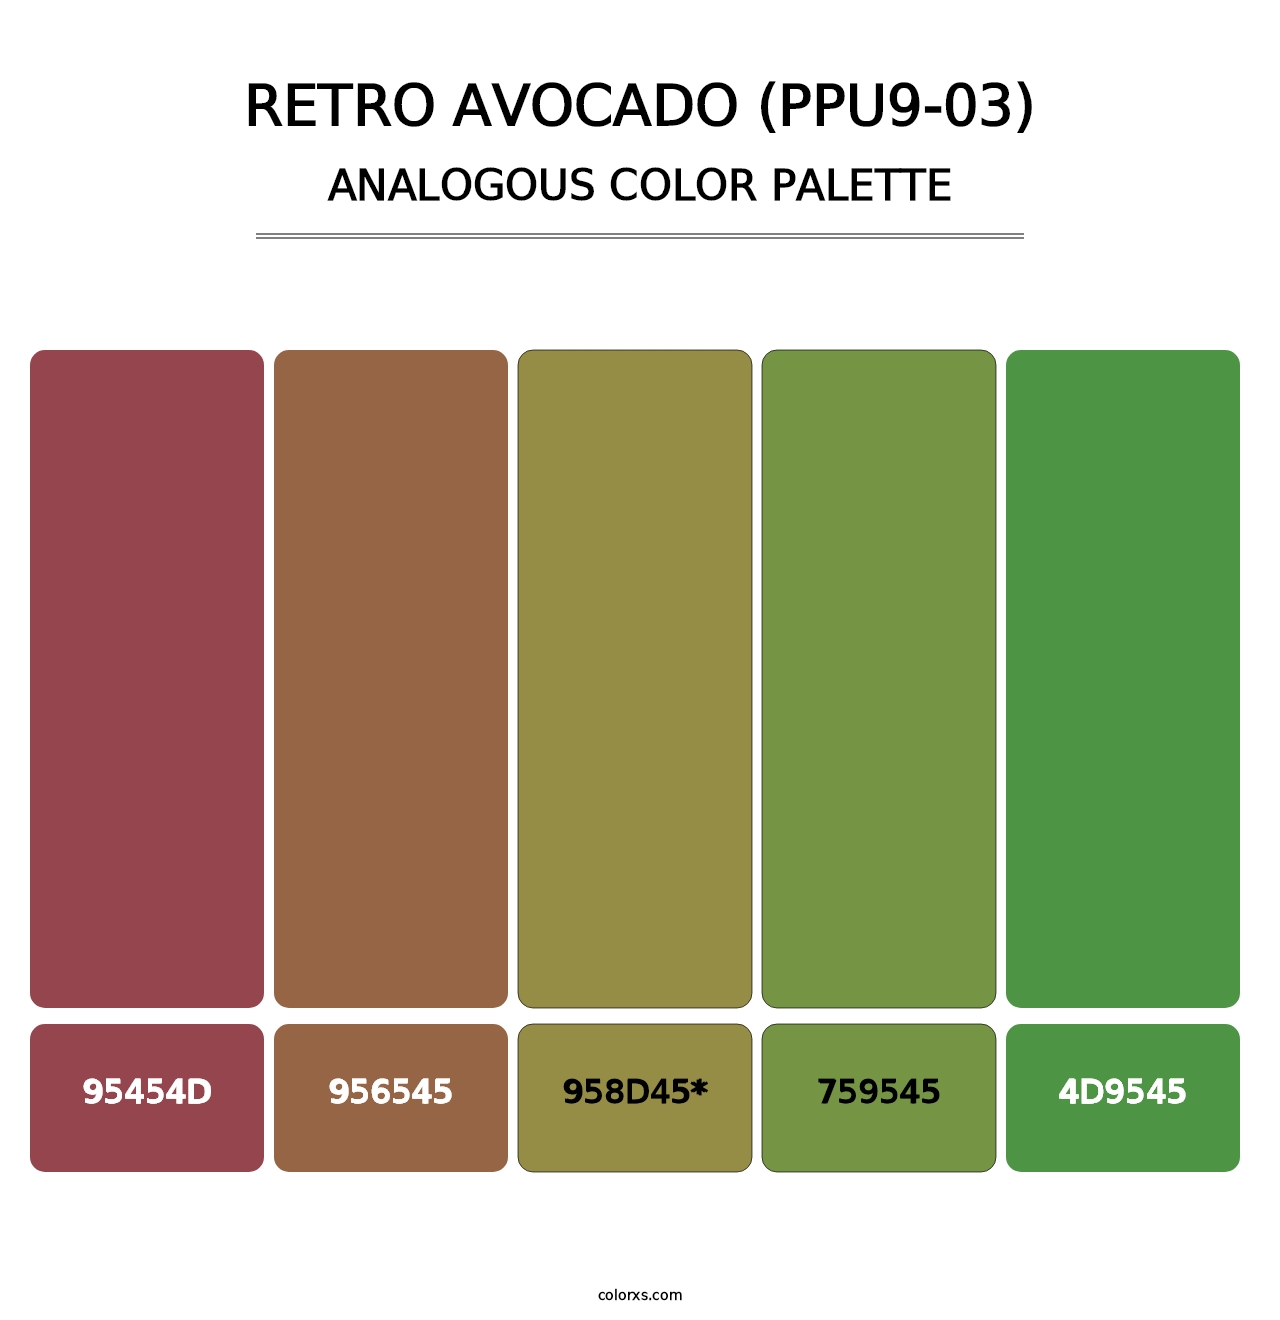 Retro Avocado (PPU9-03) - Analogous Color Palette